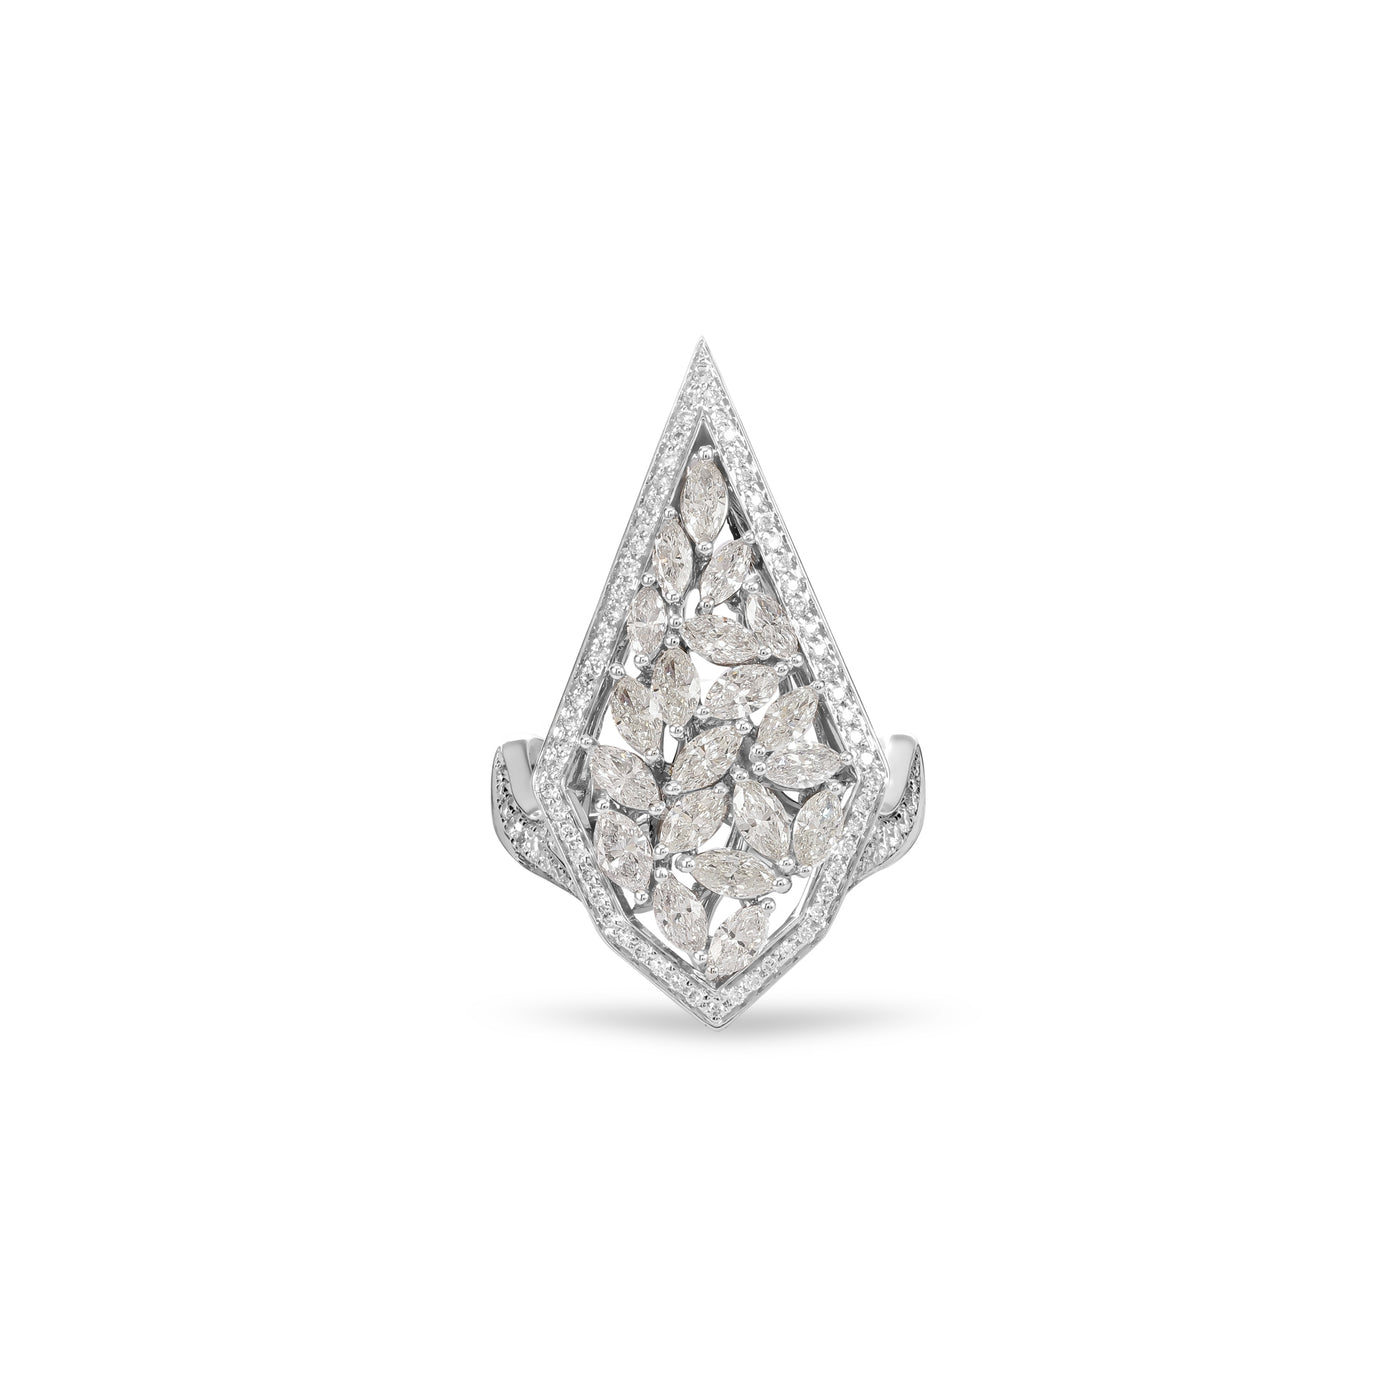 Soit Belle White Gold Pointed Diamond Ring: Elegance Redefined